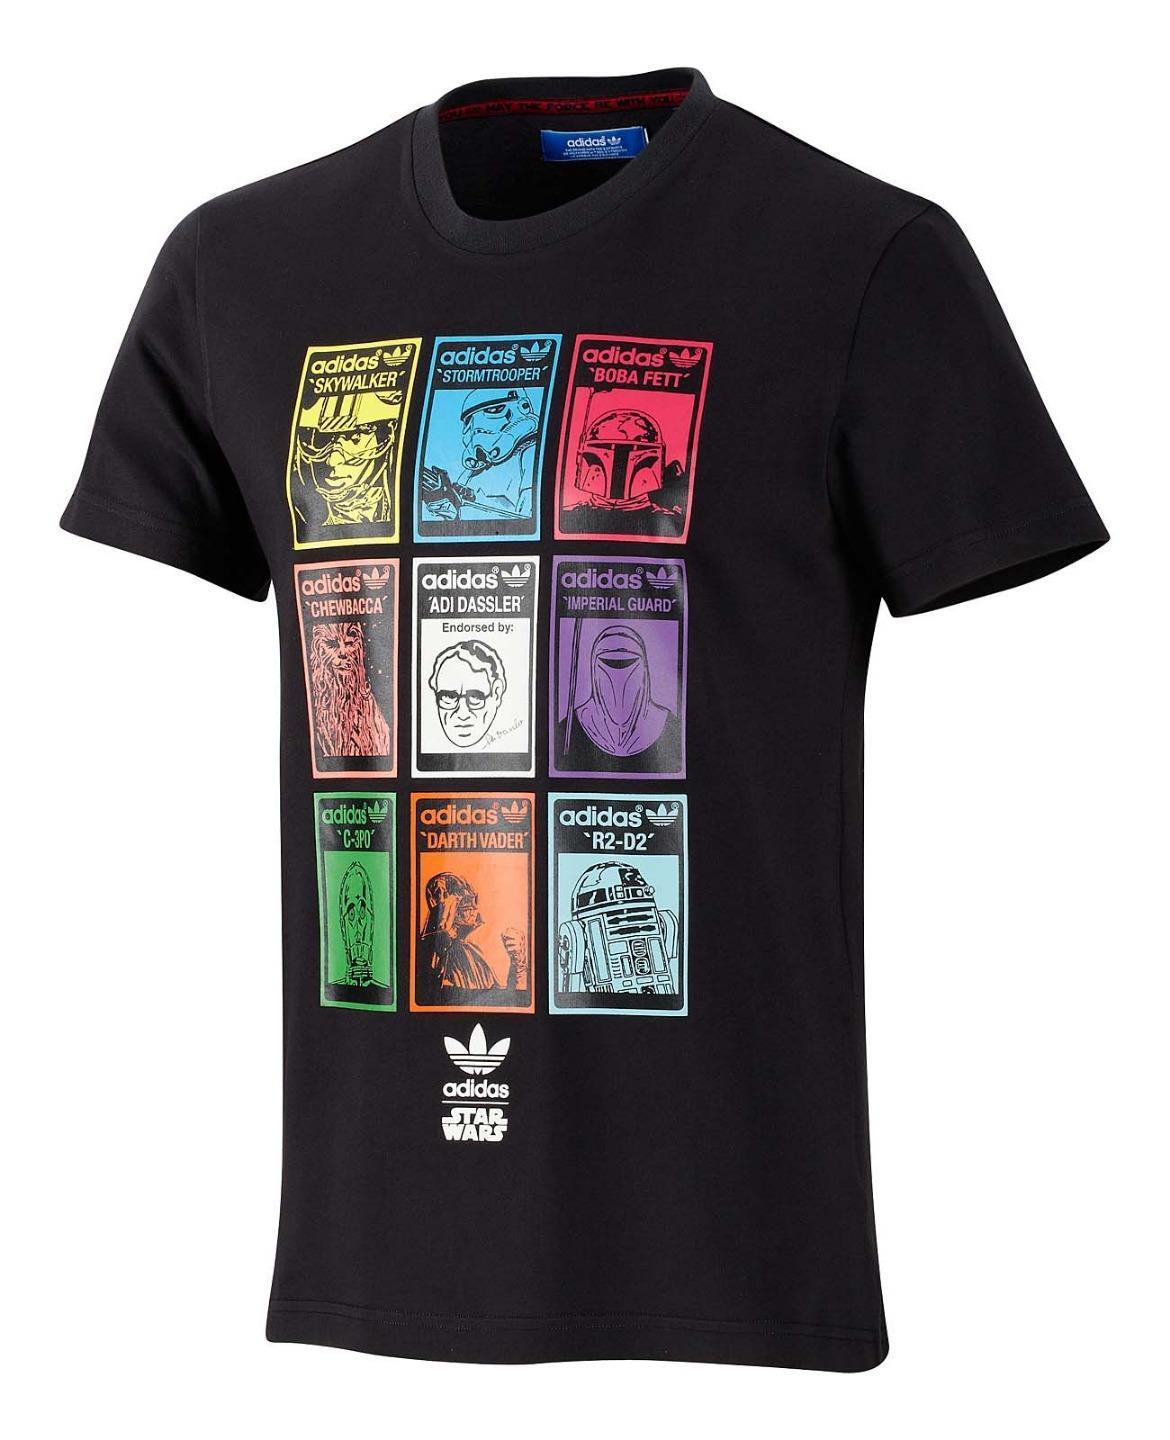 Adidas Star Wars Adi Dassler T-Shirt - Boba Fett Collectibles Fett Fan Club